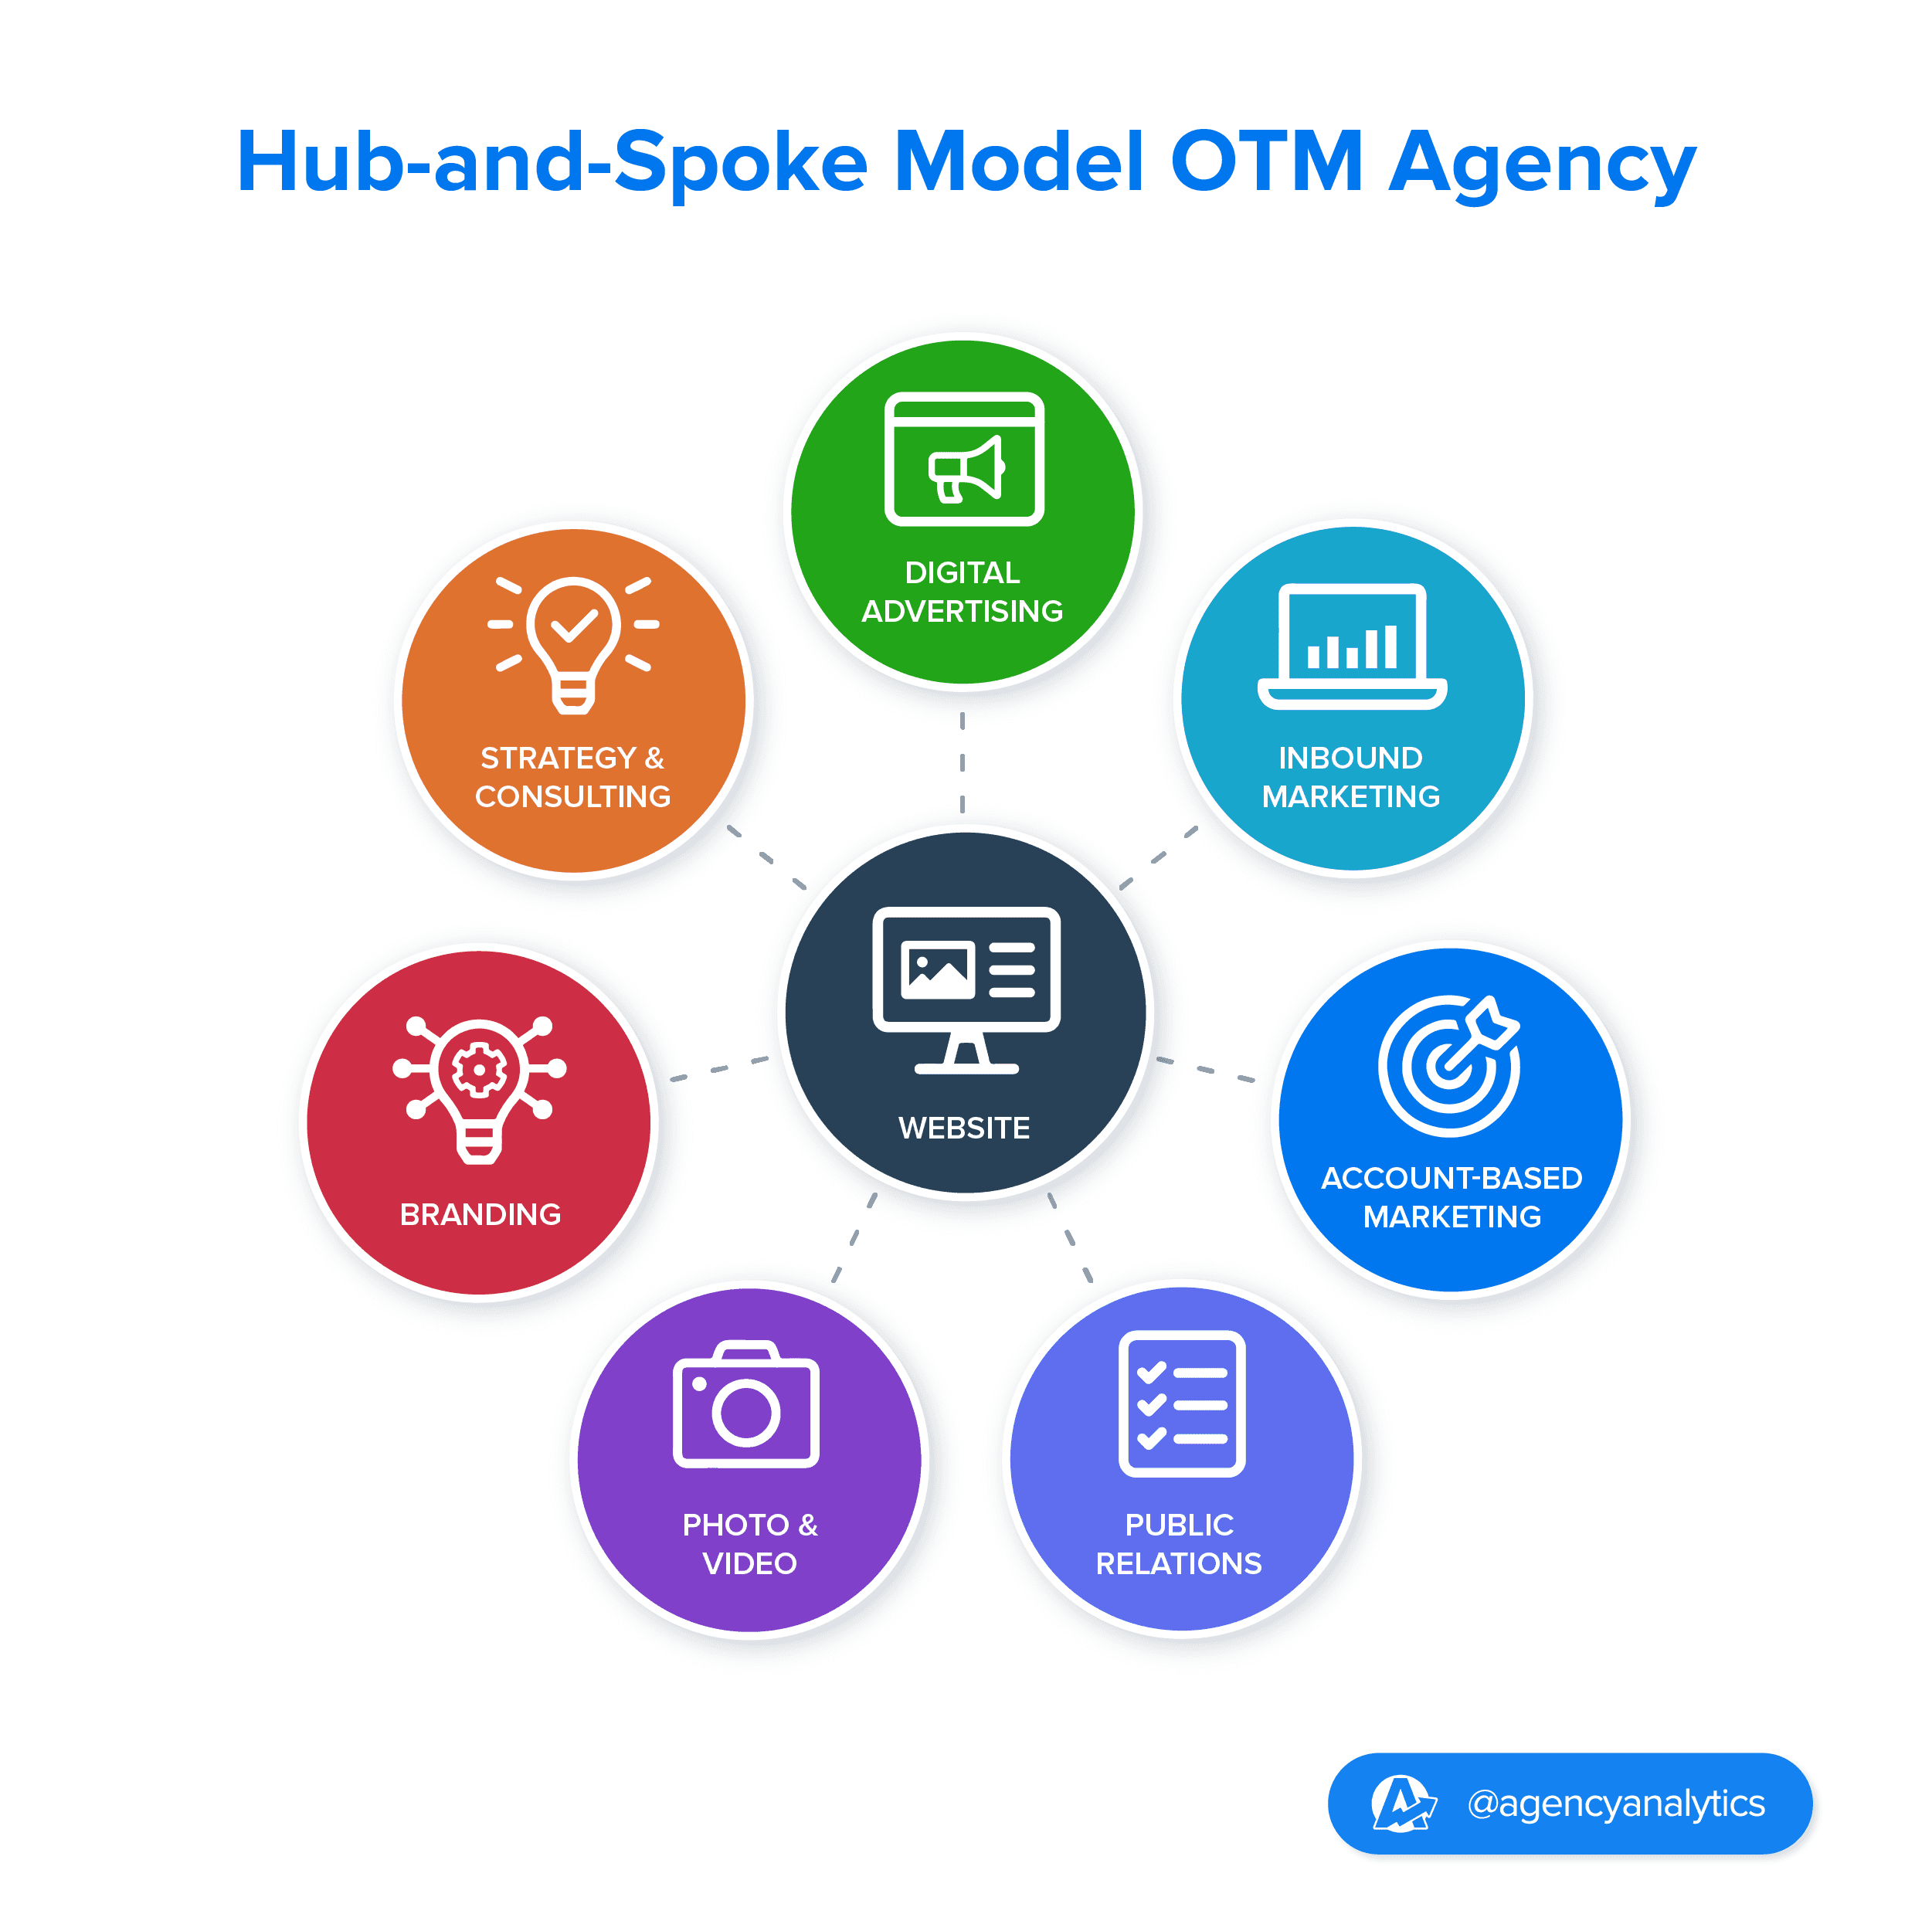 Illustration of the hub-and-spoke model for OTM